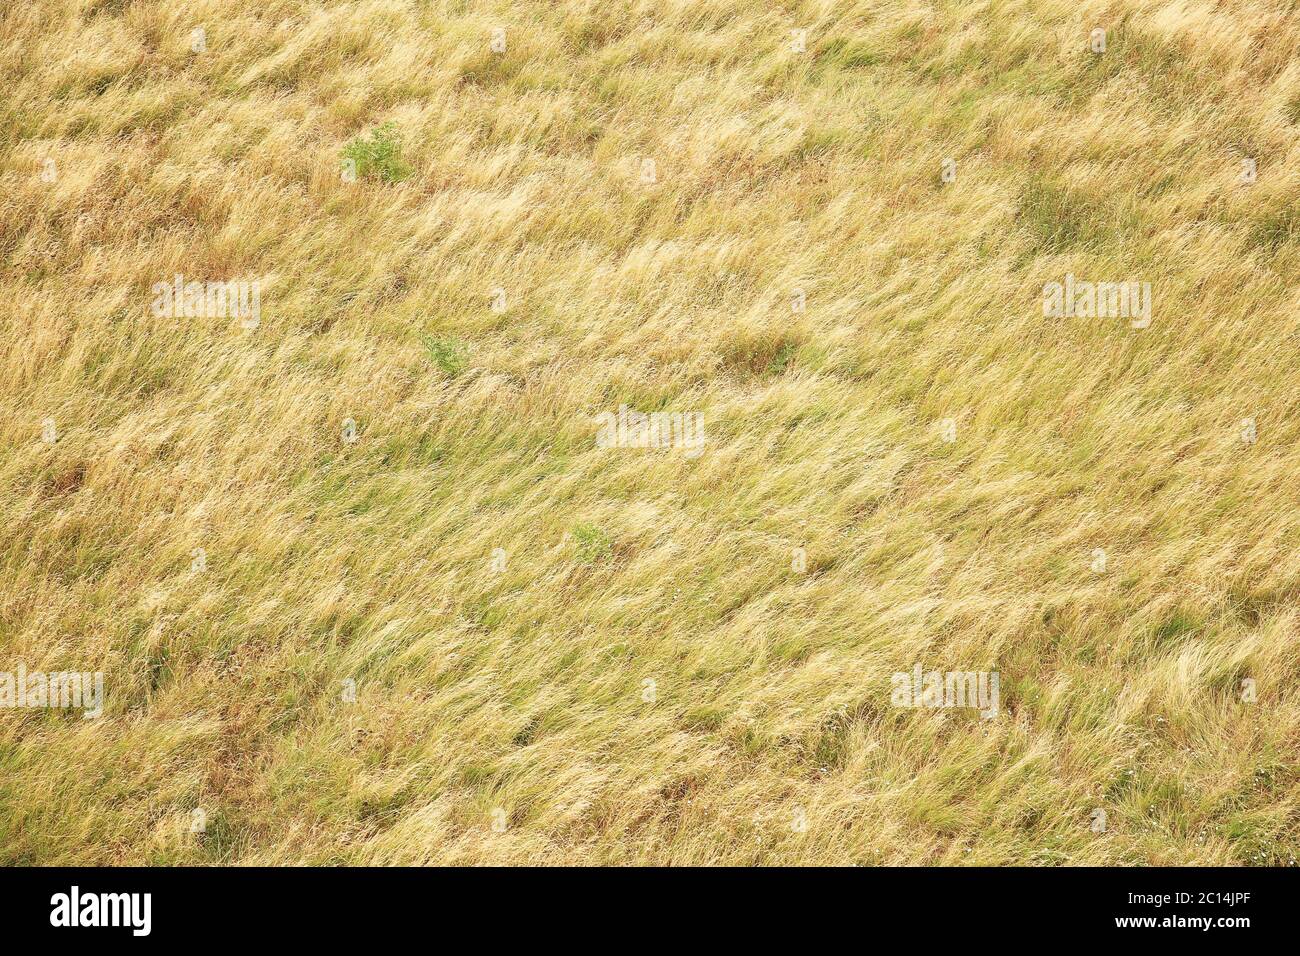 vista dall'alto dell'erba dall'occhio degli uccelli Foto Stock